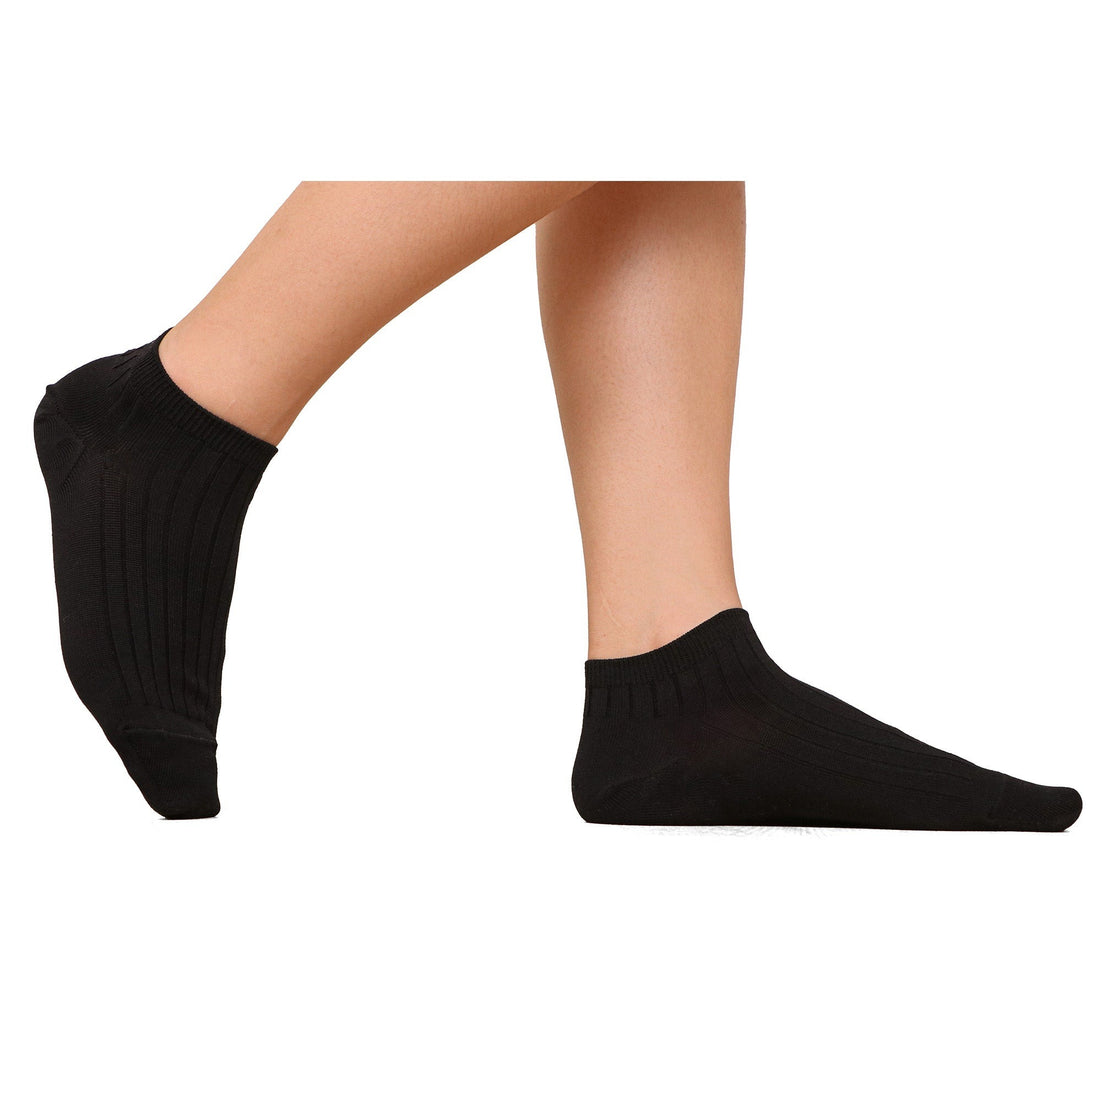 ถุงเท้าข้้อสั้น Cotton Socks Anti-bacteria รุ่น WW1106  สีดำ (BL)